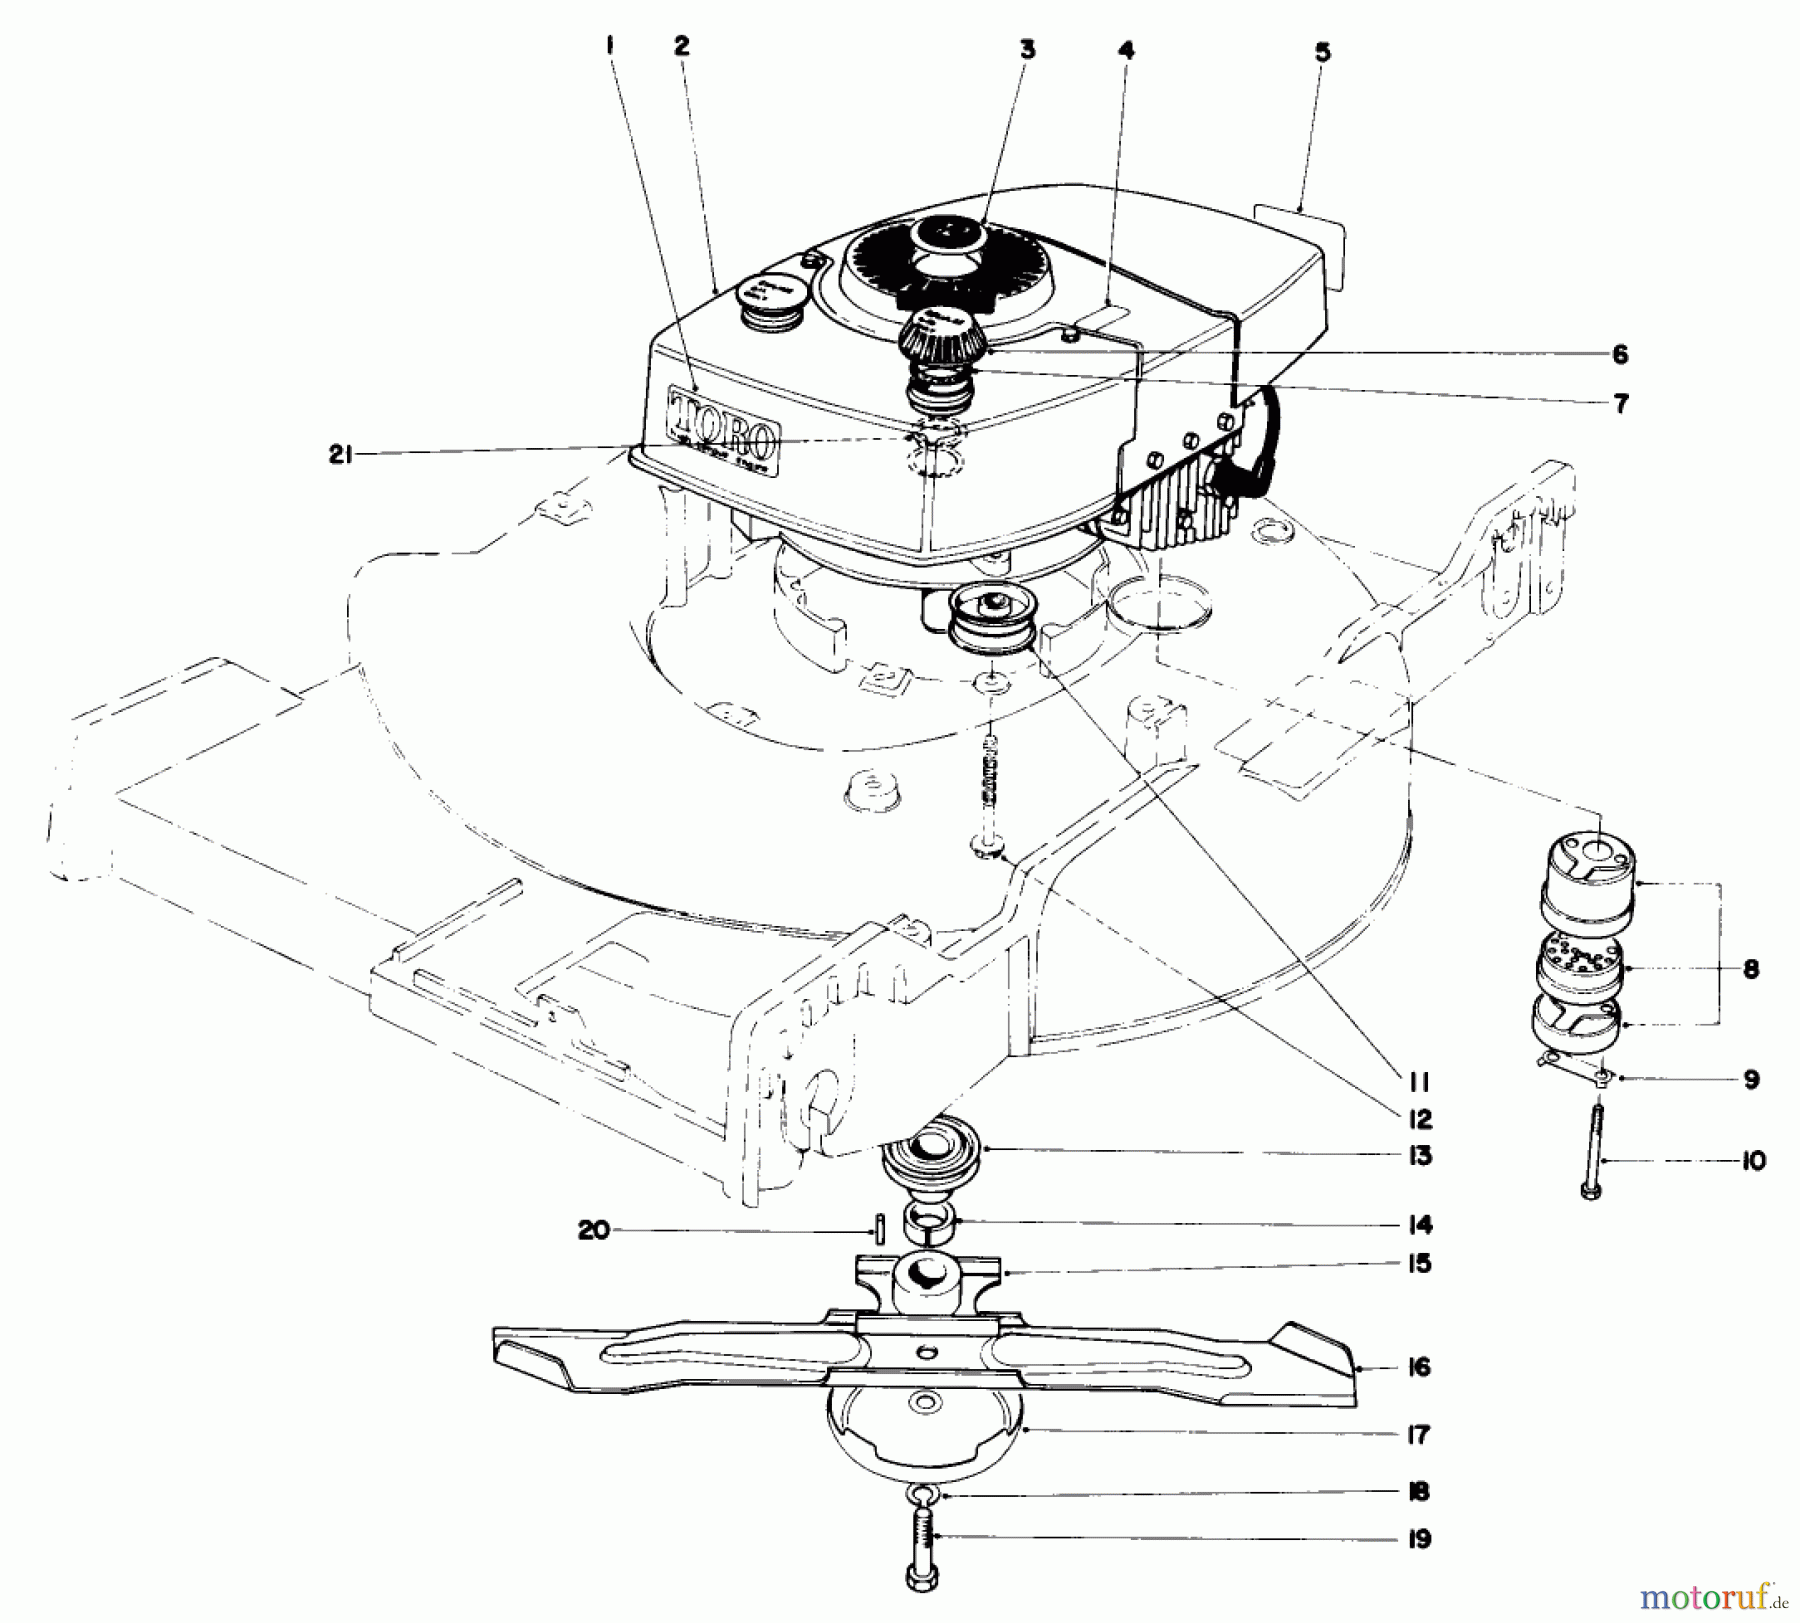  Toro Neu Mowers, Walk-Behind Seite 1 20696 - Toro Lawnmower, 1976 (6000001-7999999) ENGINE ASSEMBLY (MODEL 20506)